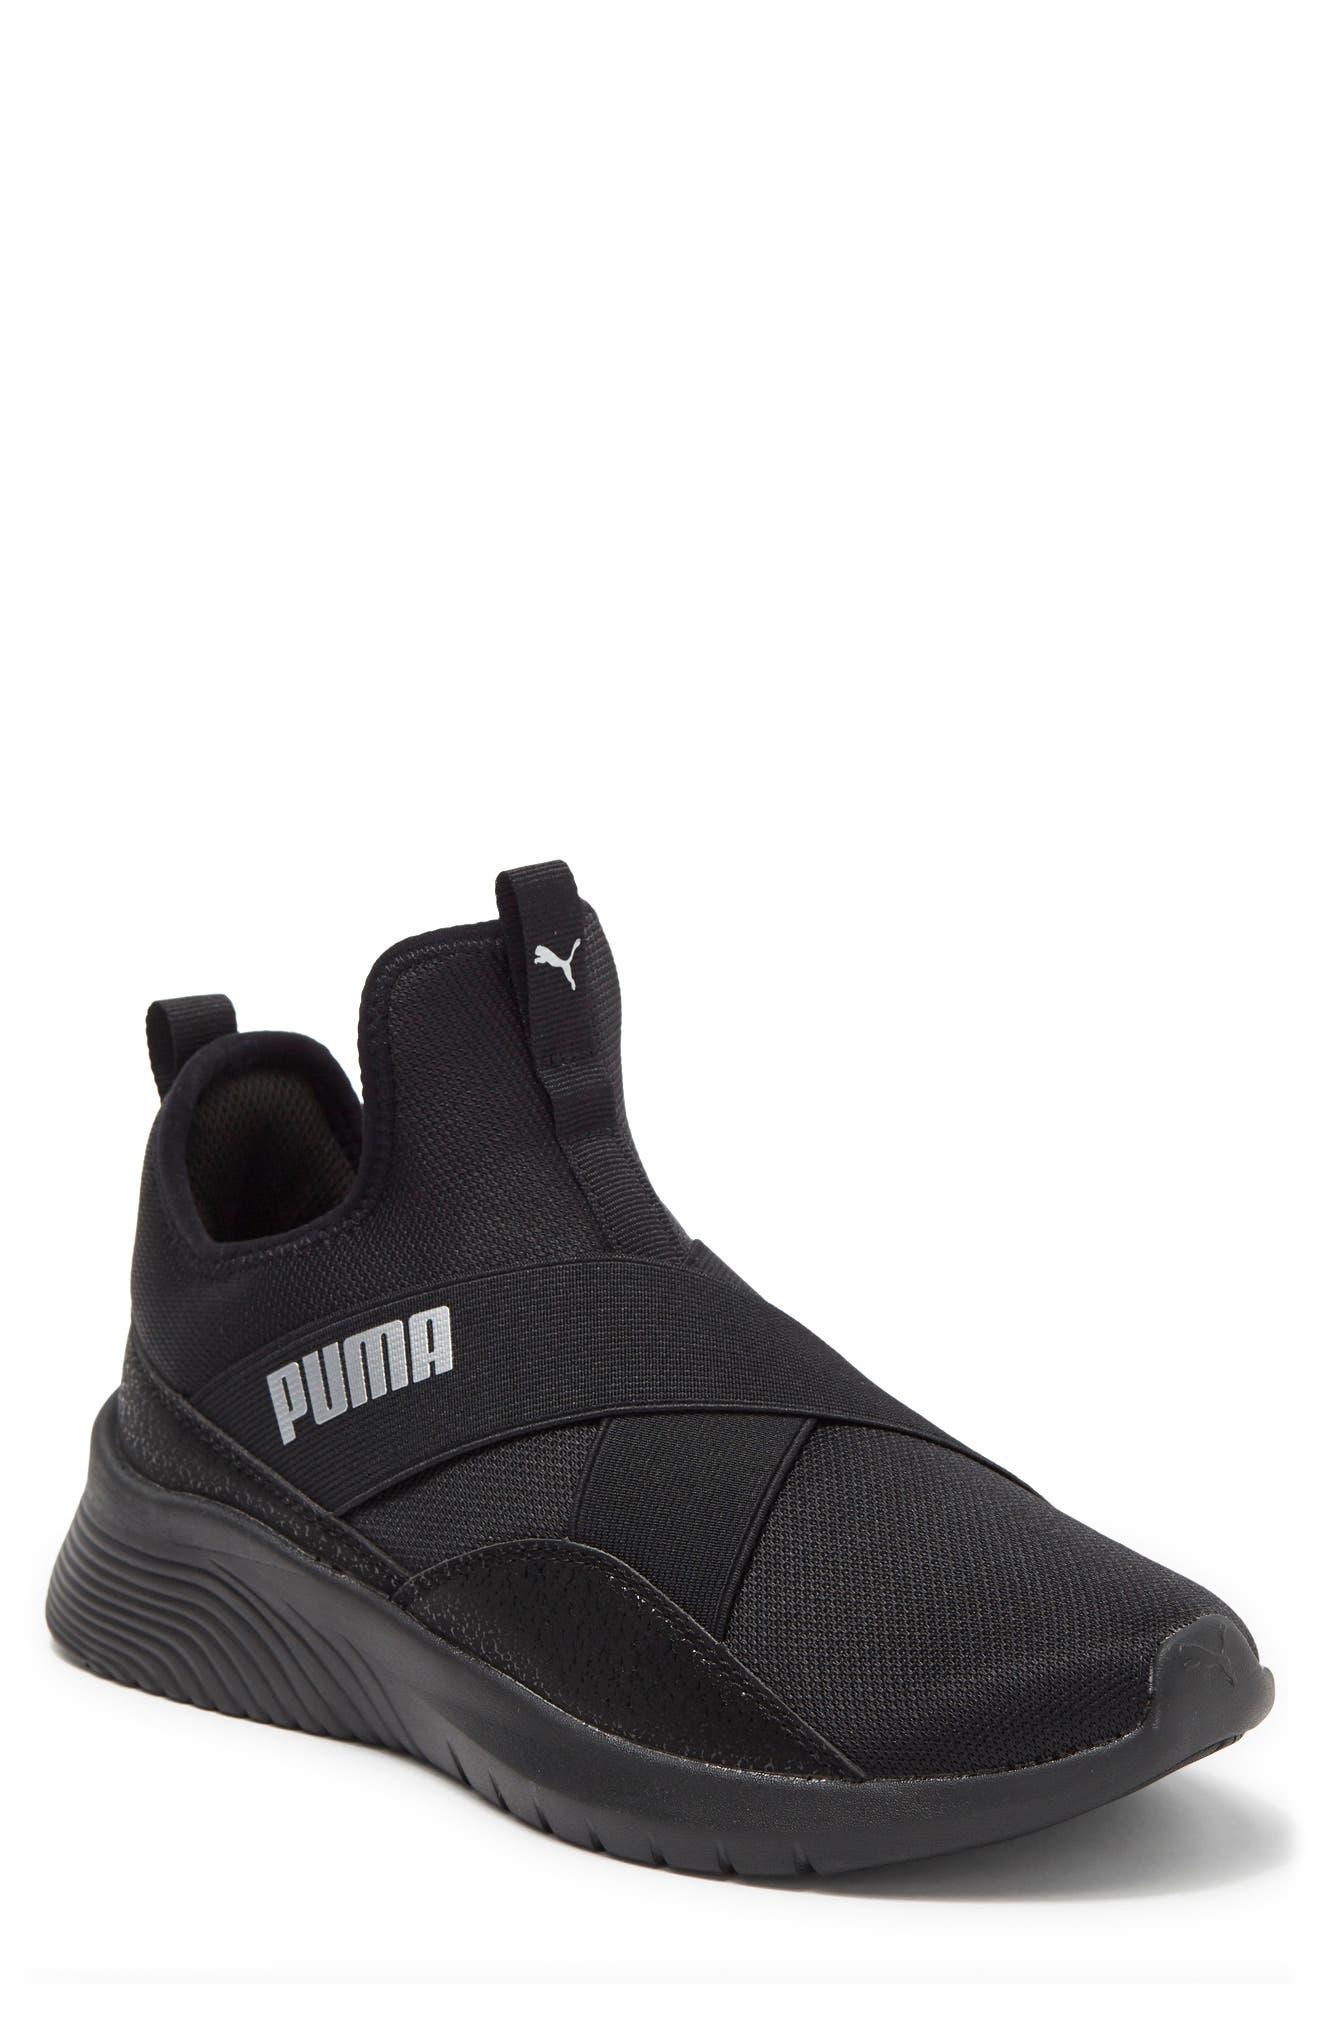 PUMA Radiate Mid Refresh Athletic Sneaker In Black-metallic Silver At  Nordstrom Rack | Lyst